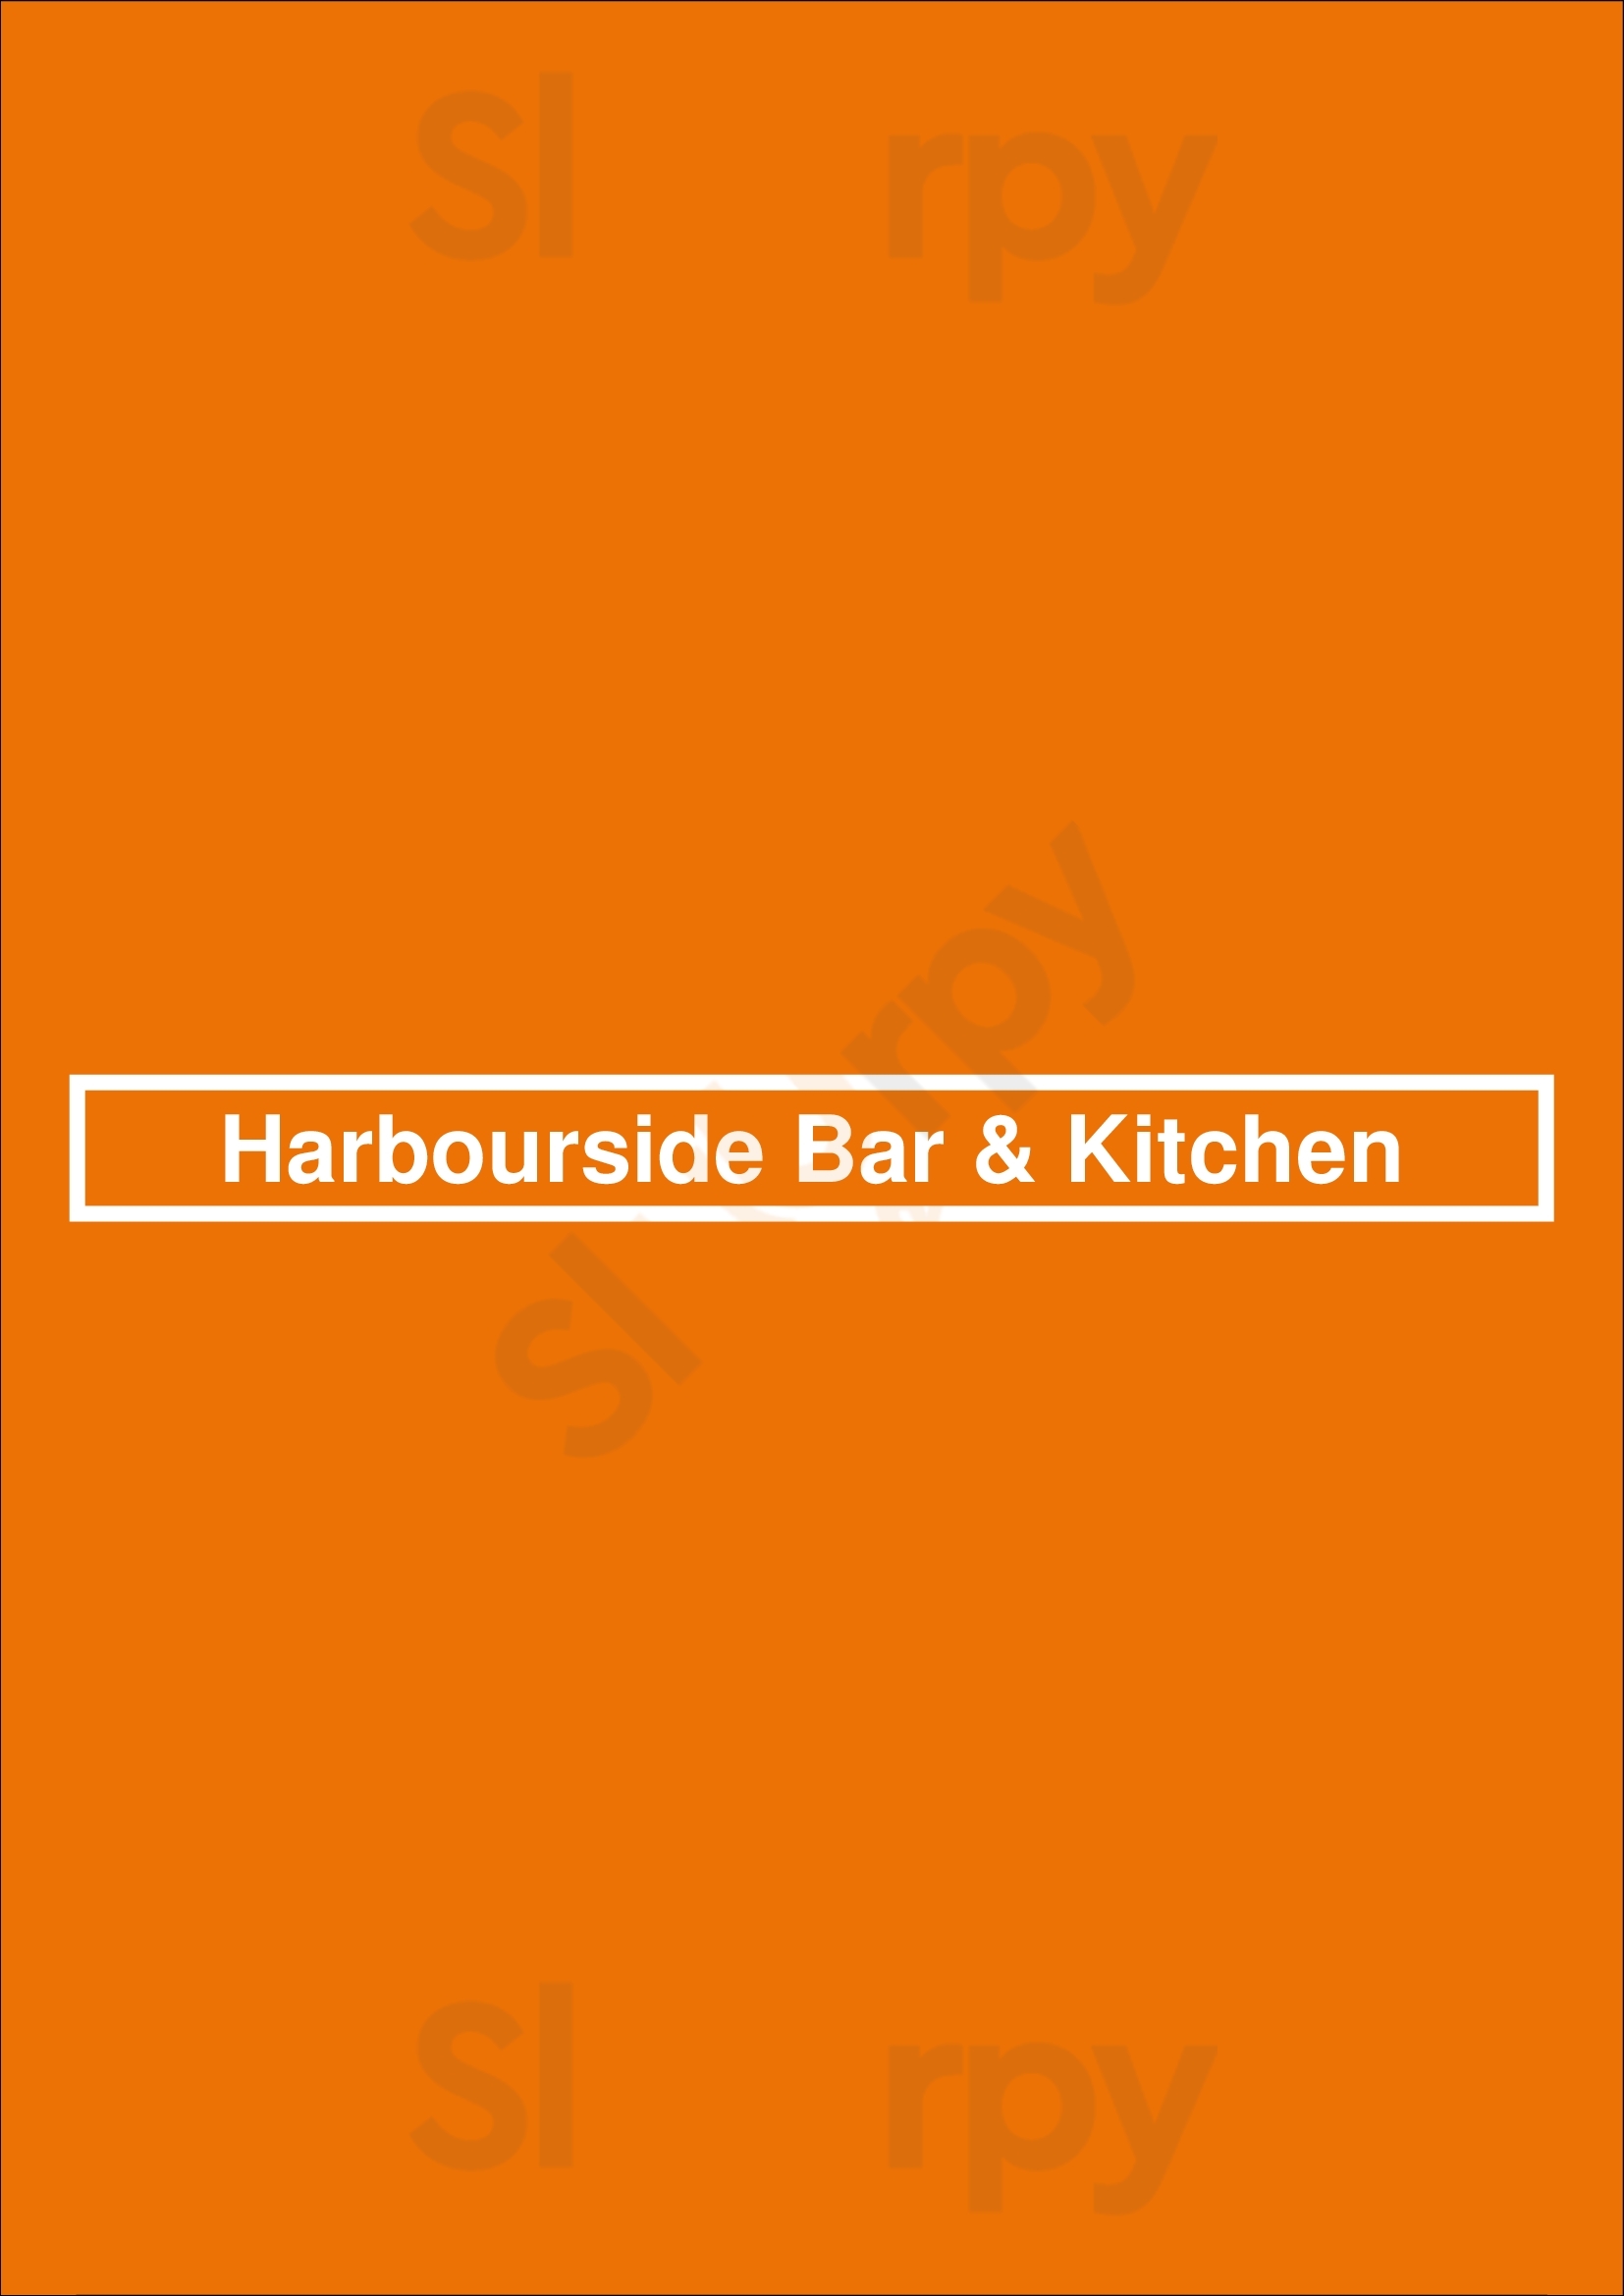 Harbourside Bar & Kitchen Cairns Menu - 1